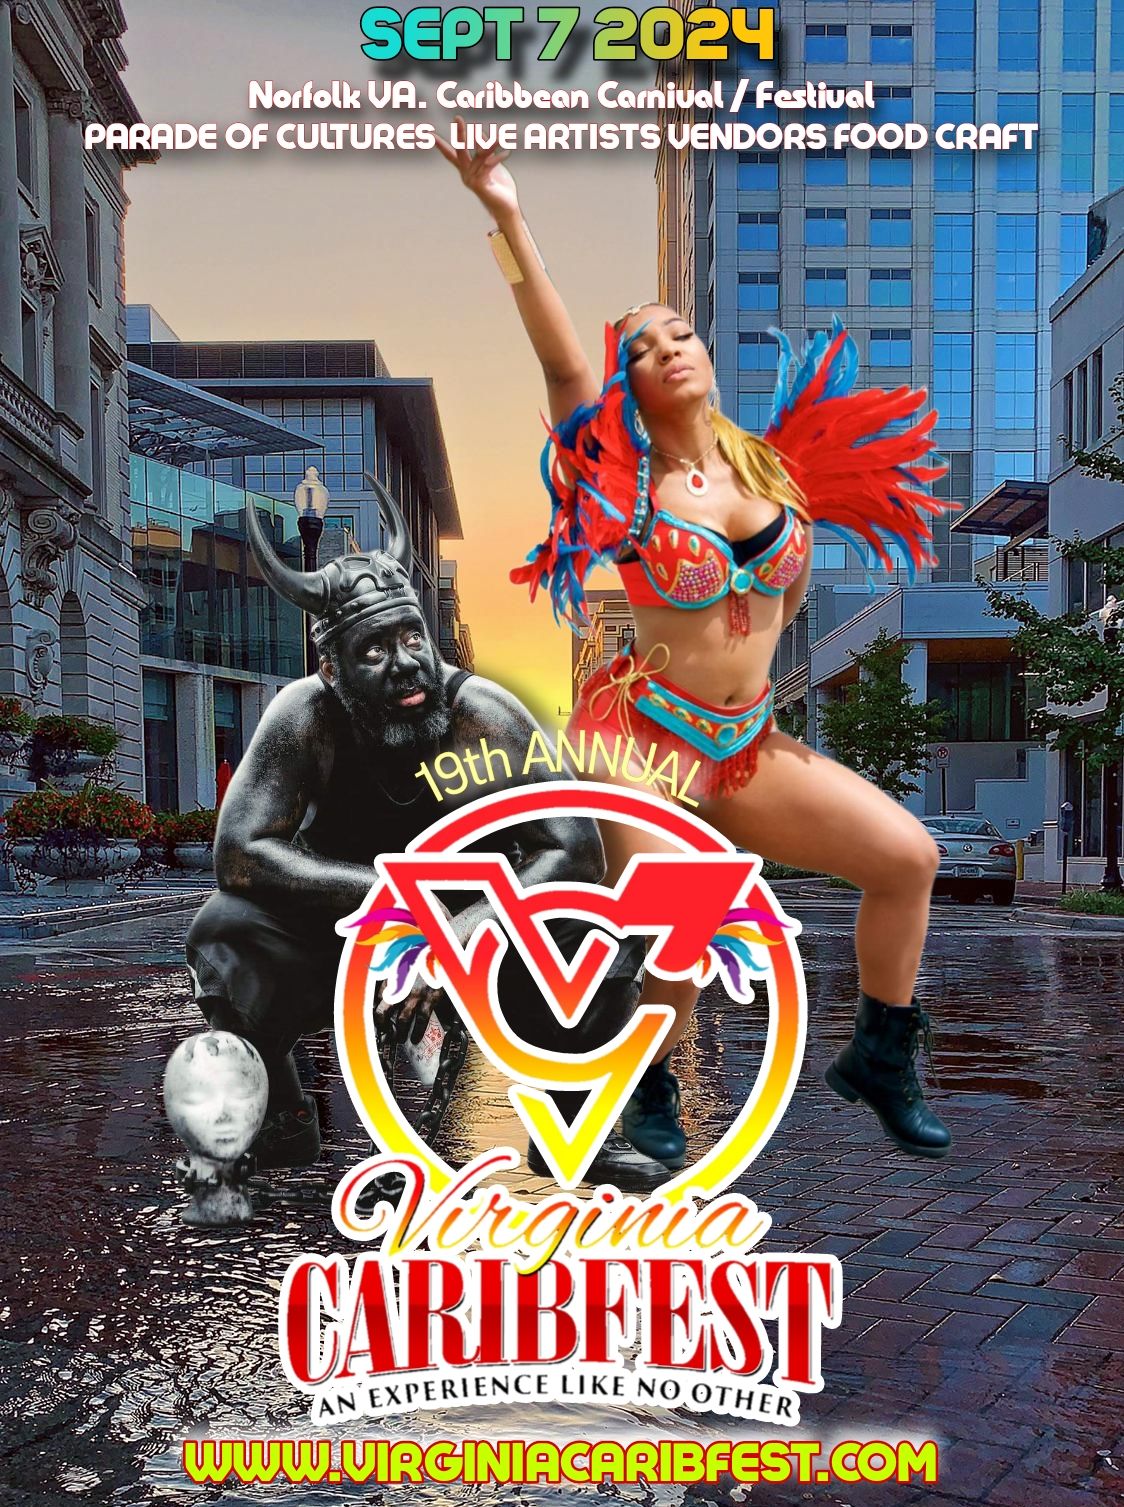 Virginia CaribFest 